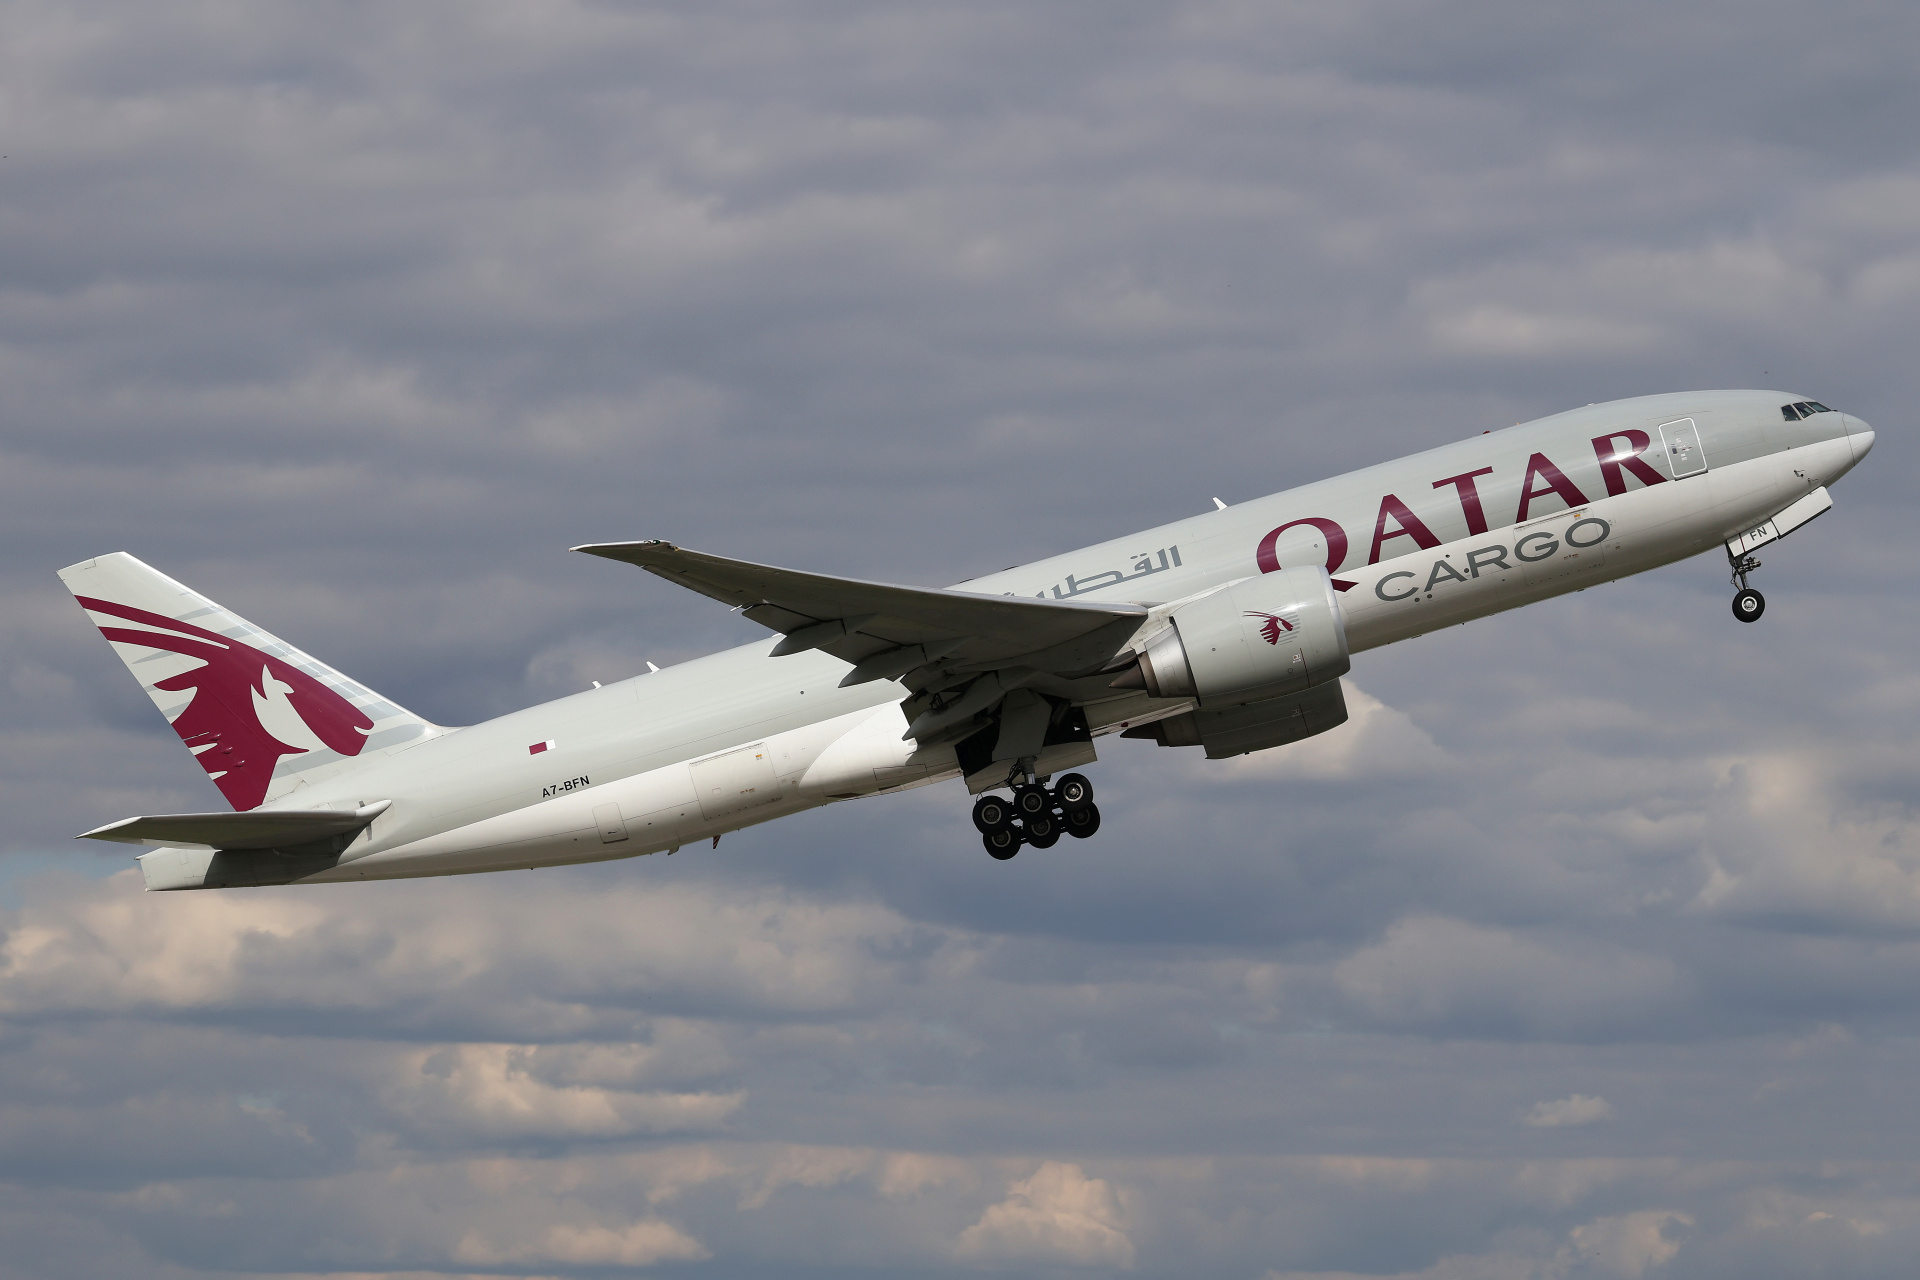 A7-BFN (Aircraft » EPWA Spotting » Boeing 777F » Qatar Airways Cargo)